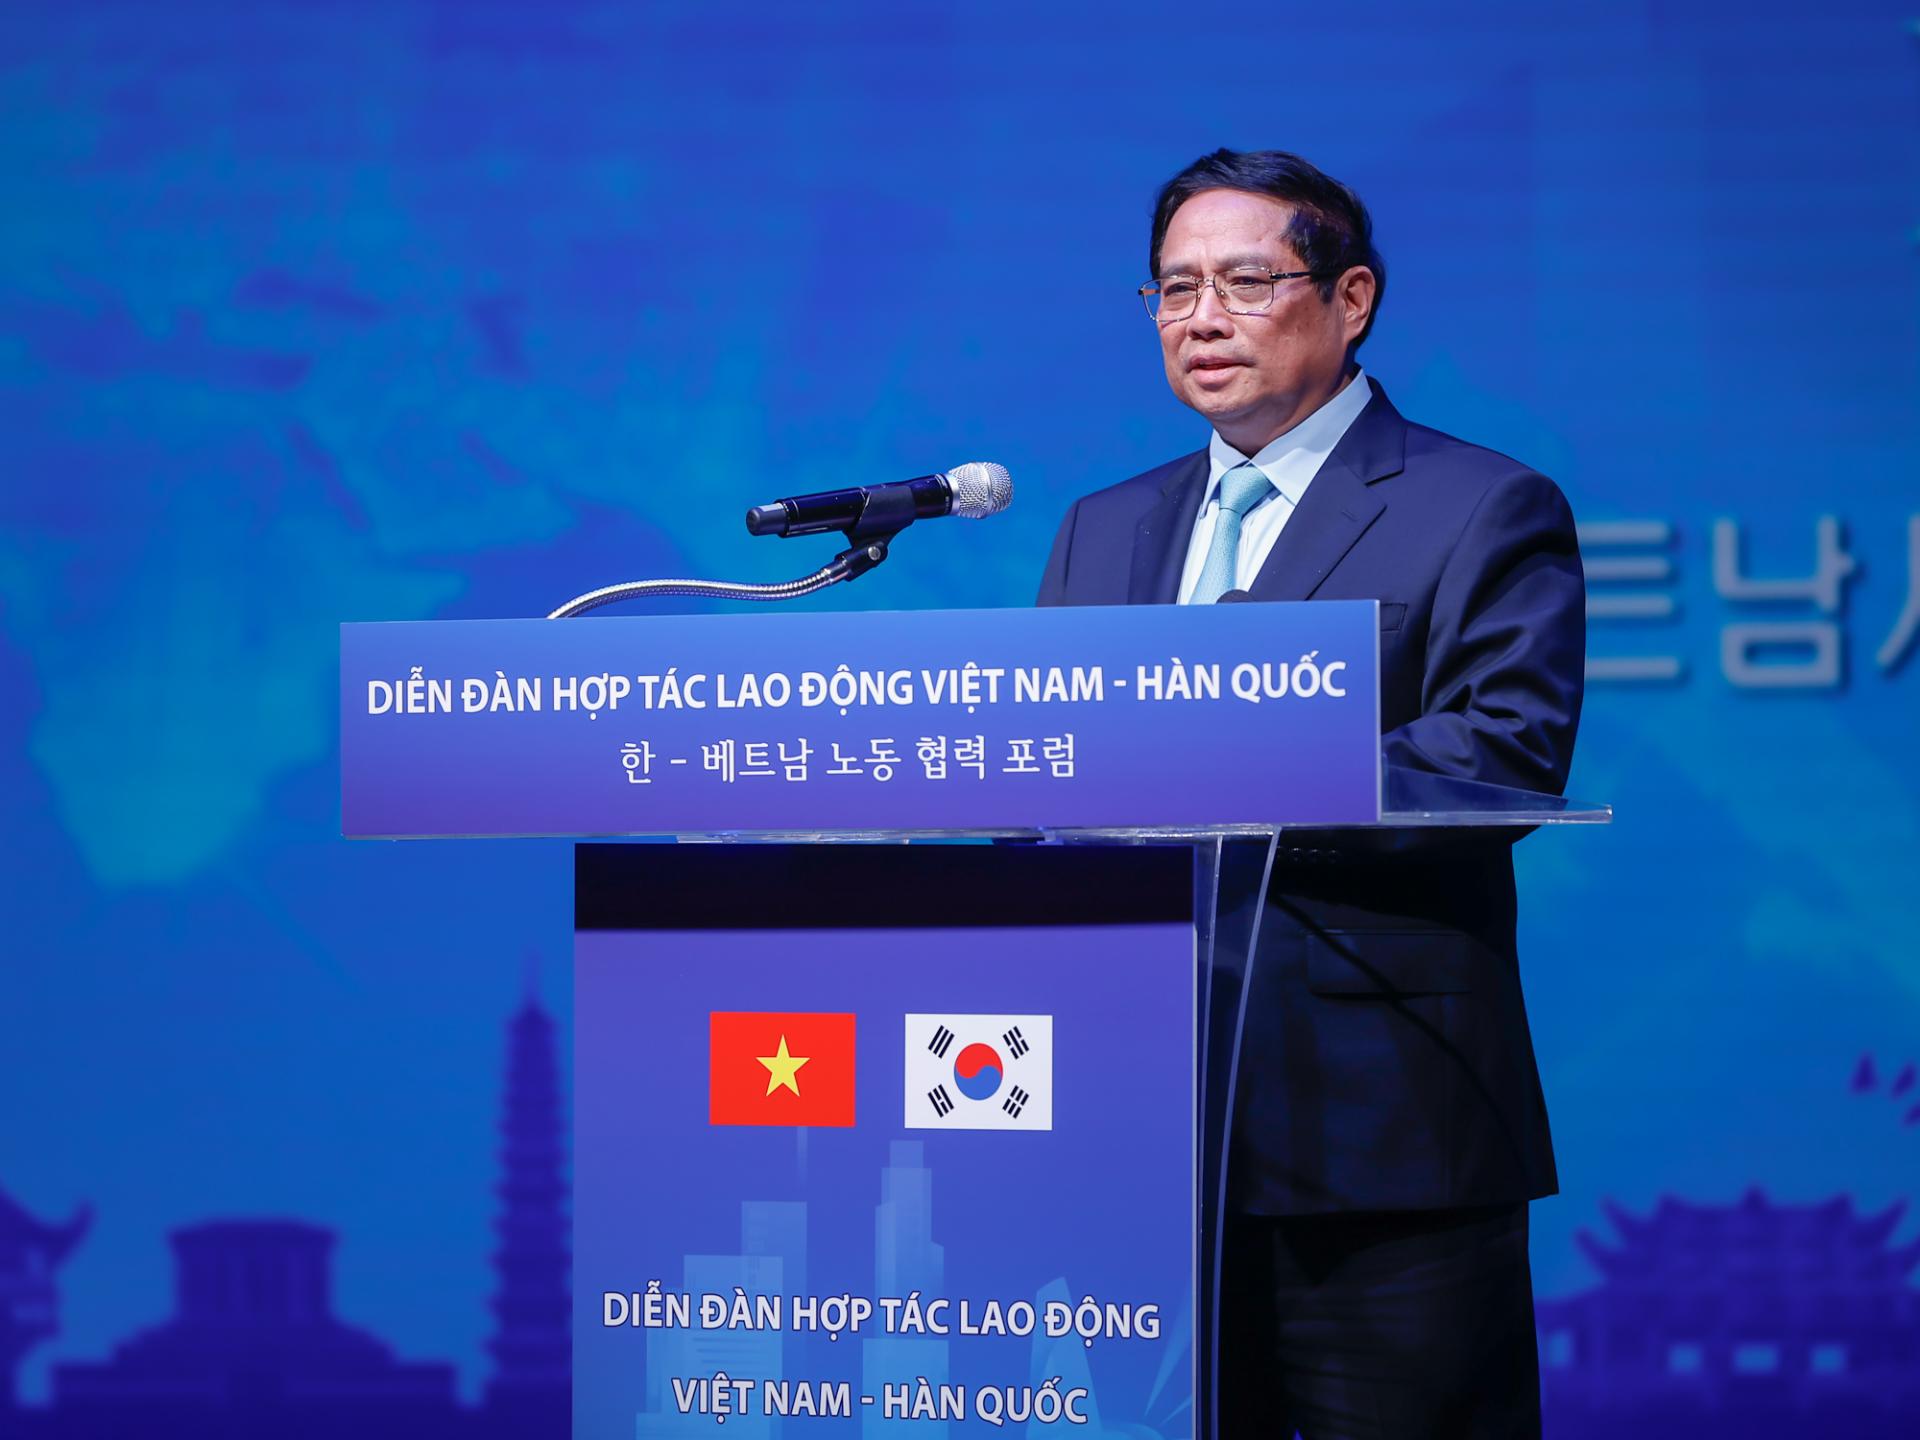 Thủ tướng Phạm Minh Chính nhấn mạnh yêu cầu phát triển quan hệ hợp tác lao động lành mạnh, bình đẳng, an toàn, văn minh, nhân văn.